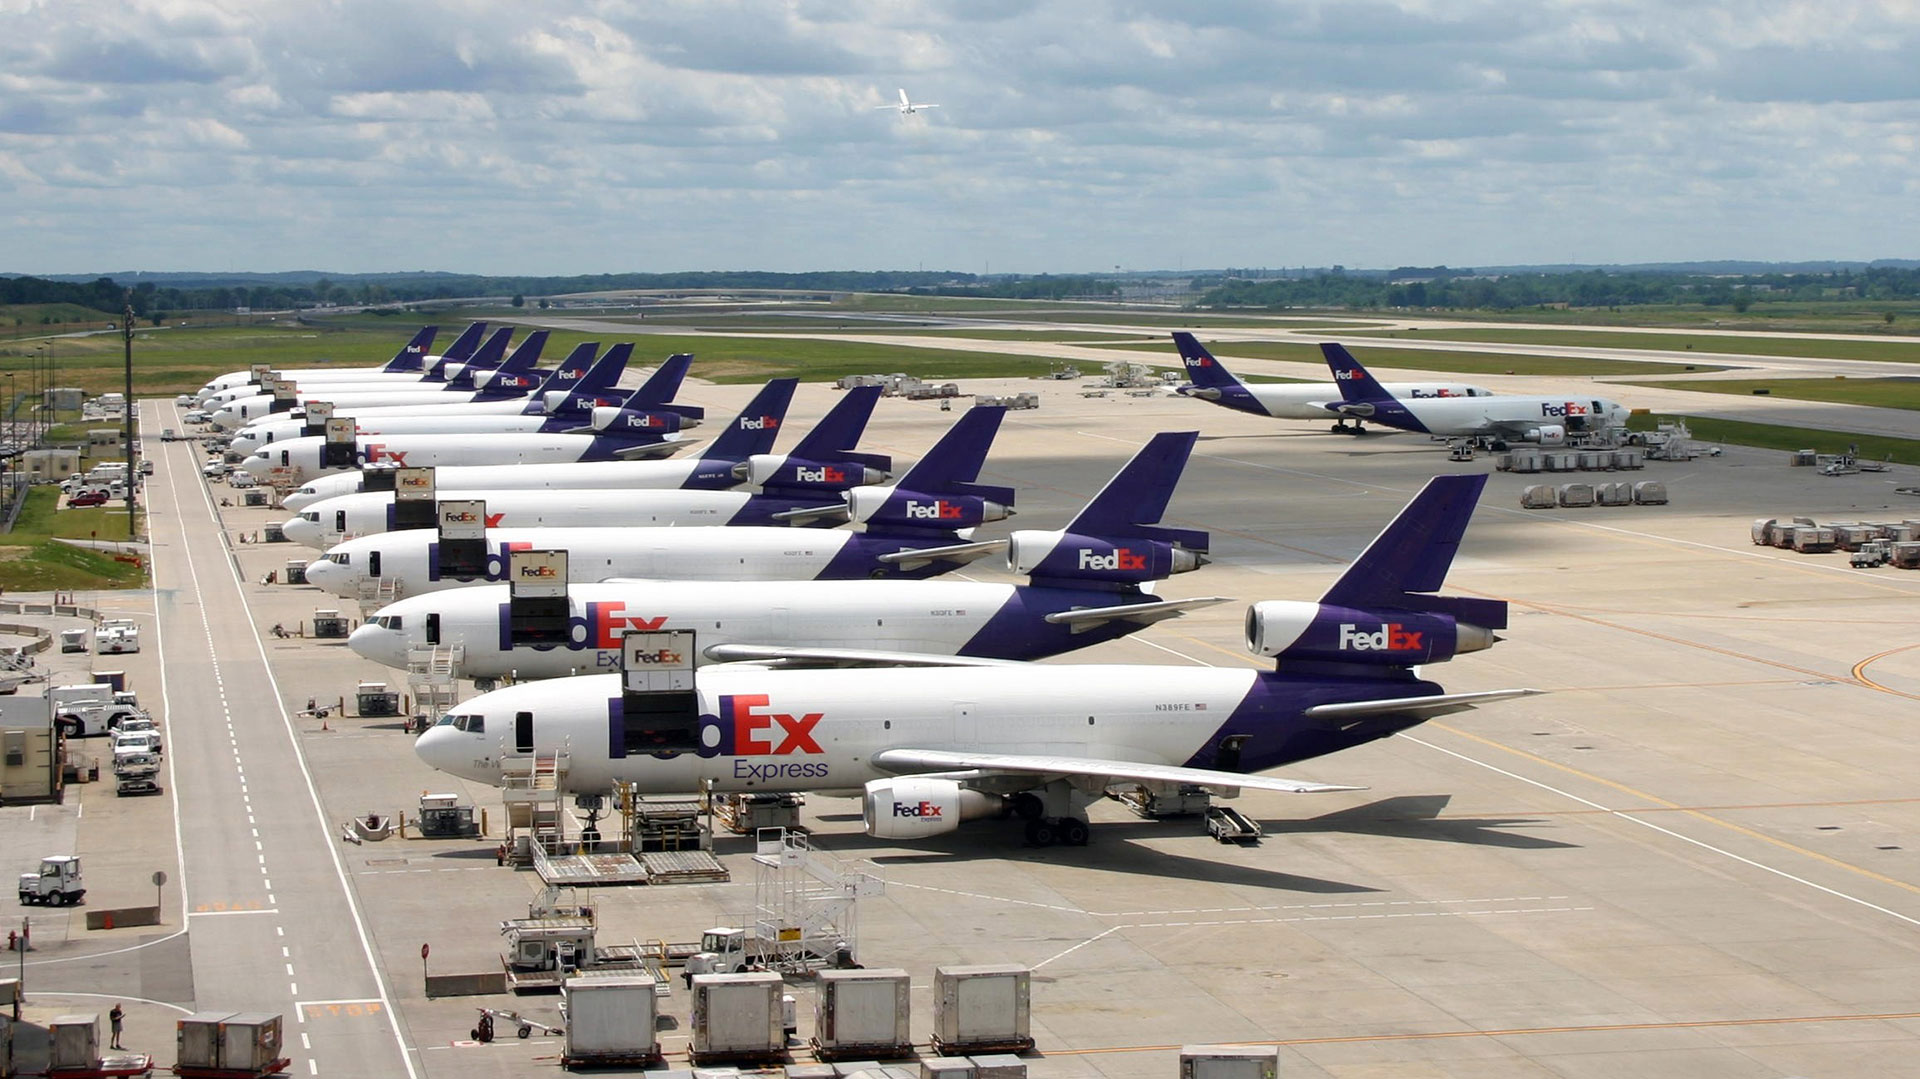 Según Rolf Habben, CEO de Happag Lloyd, la quinta naviera mundial, es muy difícil competir en carga aérea con gigantes como FedEx y UPS, que tienen flotas de centenares de aviones